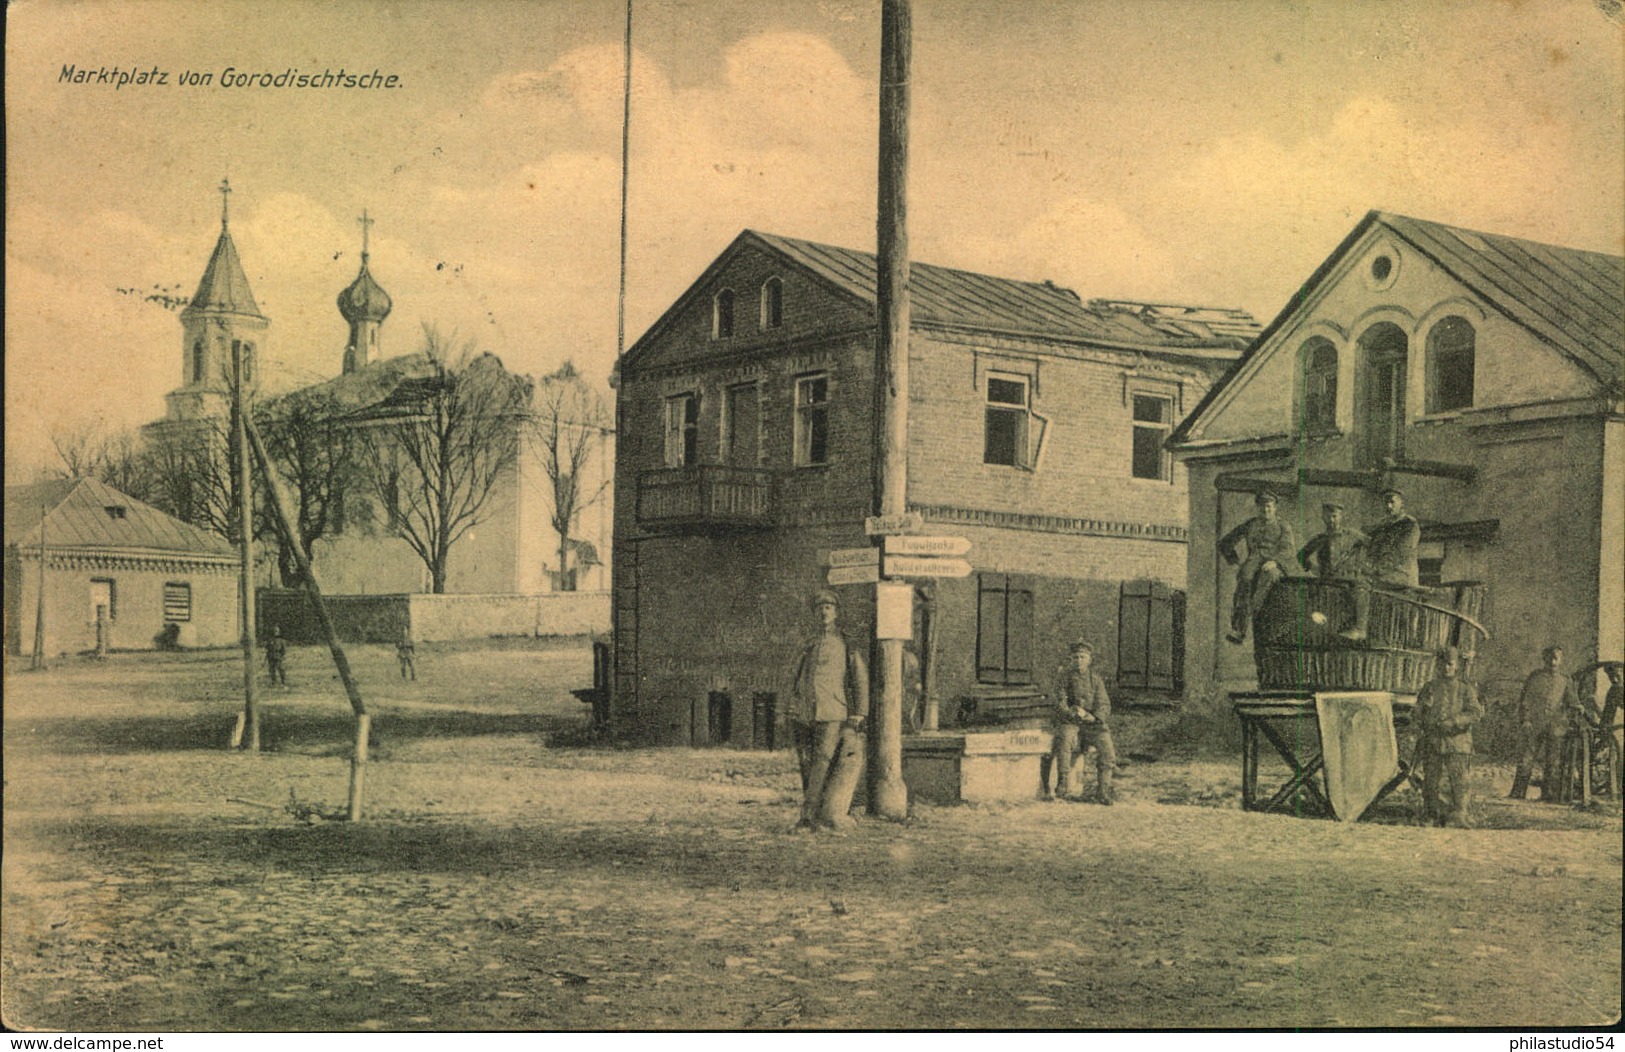 1917, GORODISCHTSCHE, Ukraine, Городище, Marketplace, Marktplatz - Military Post Ww 1 - Ukraine